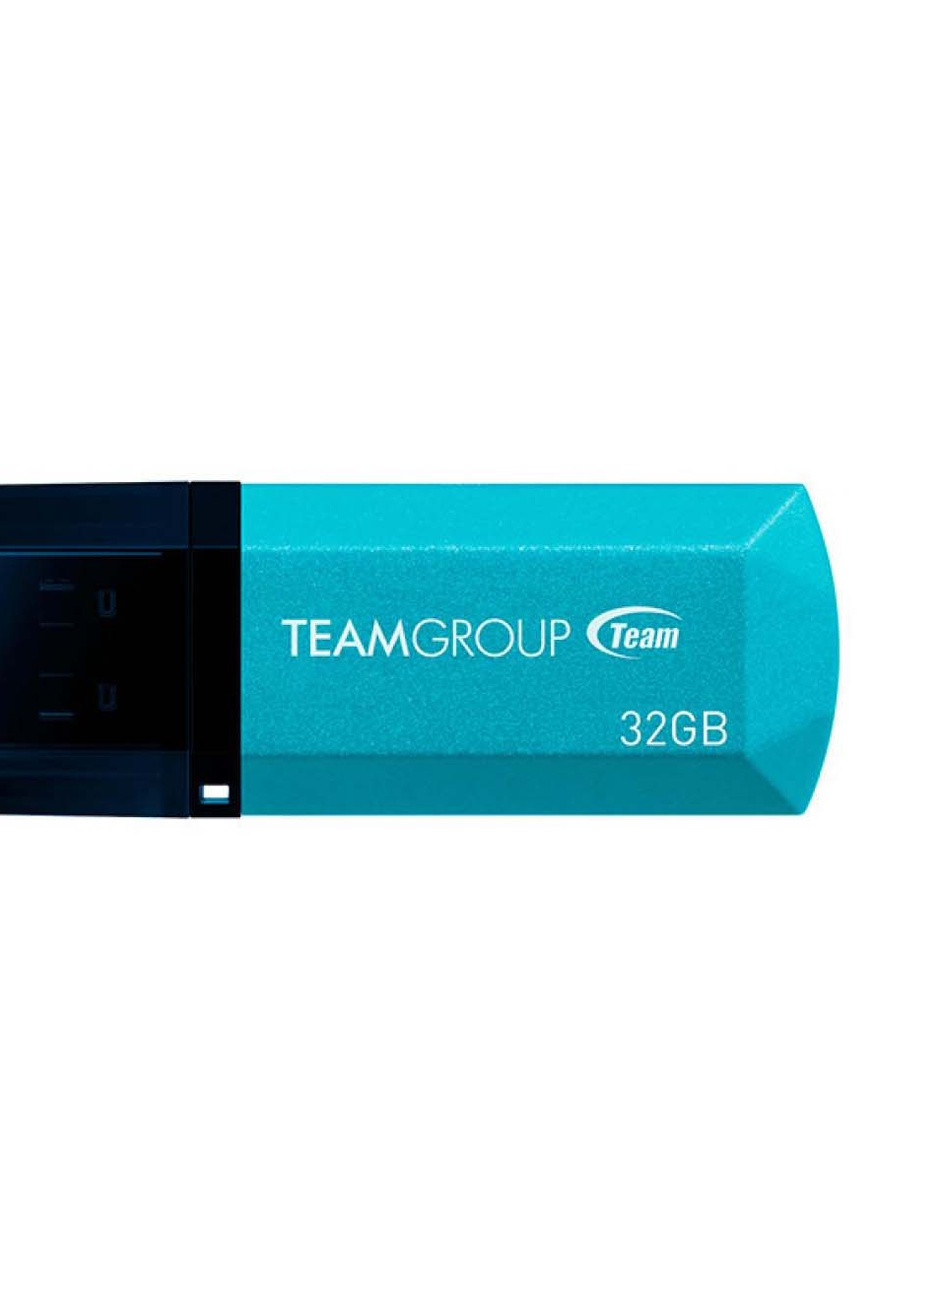 USB флеш накопичувач (TC15332GL01) Team 32gb c153 blue usb 2.0 (232750116)